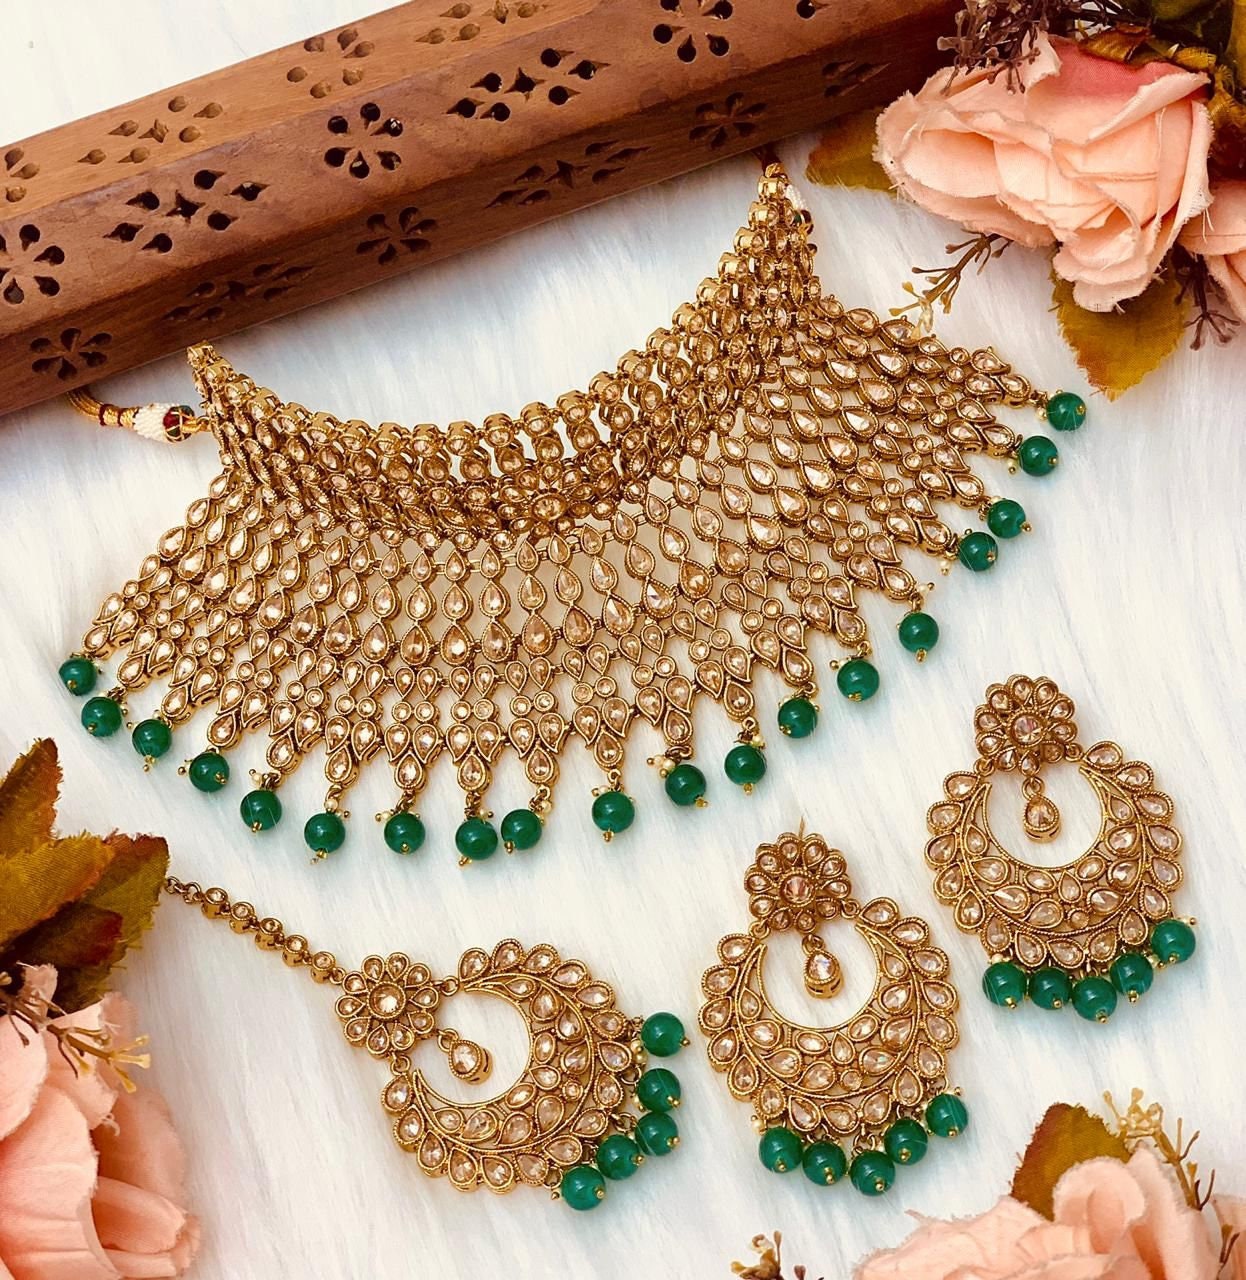 Conjunto nupcial indio de bronce dorado/joyería india Sabyasachi/joyería Kundan/collar polki/gargantilla de boda paquistaní/joyería verde india nupcial